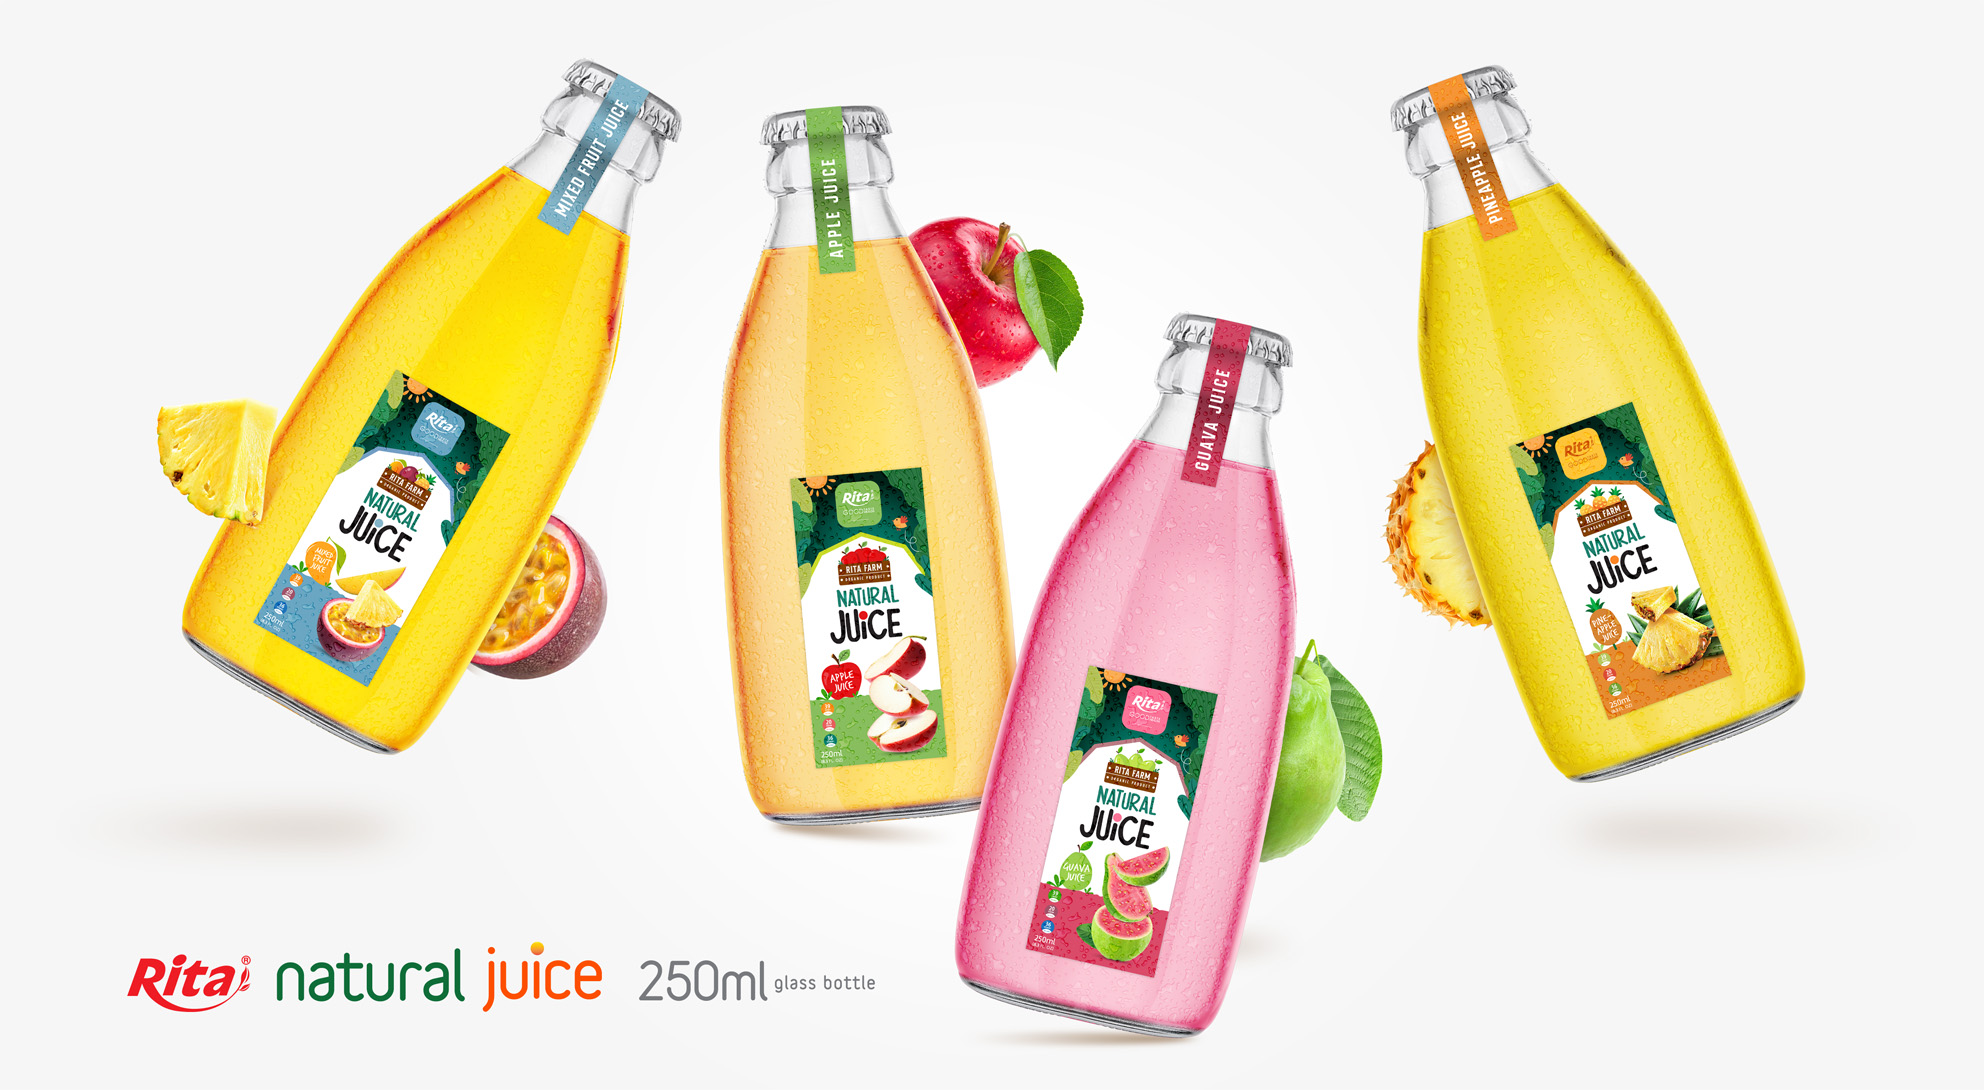 RITA NFC natural tropical fruit juice poster